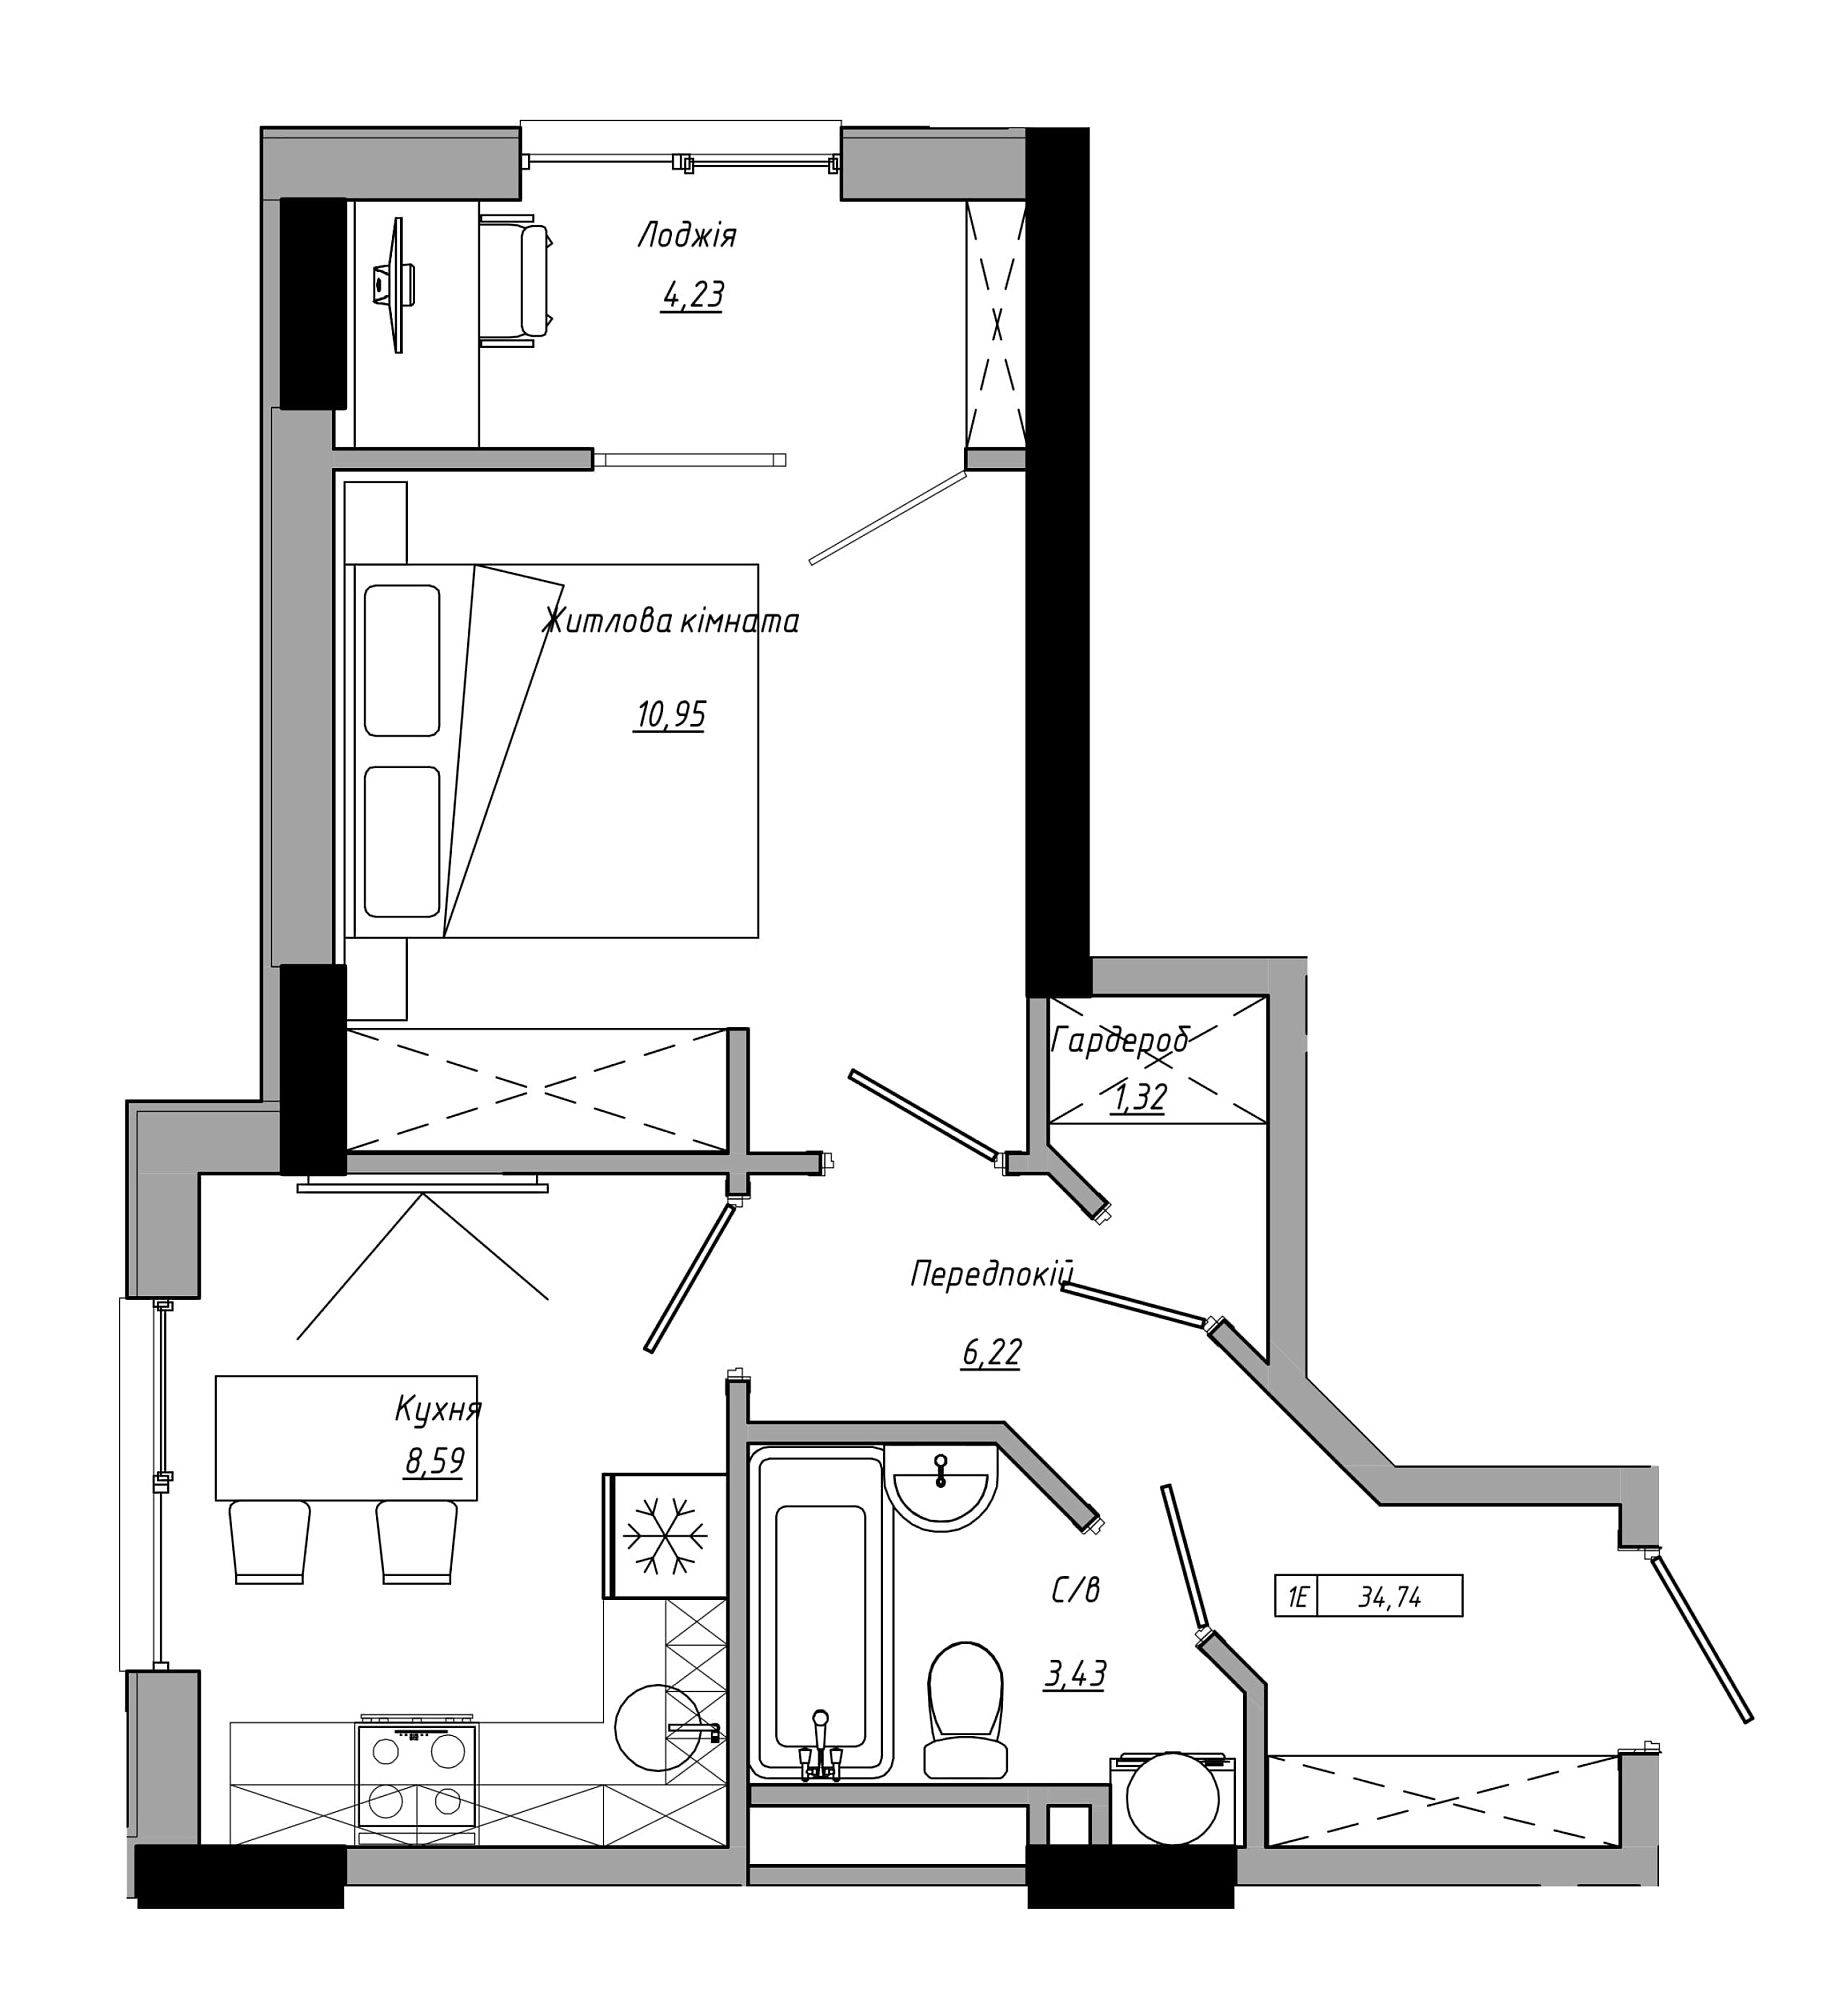 Планировка 1-к квартира площей 34.74м2, AB-21-10/00009.